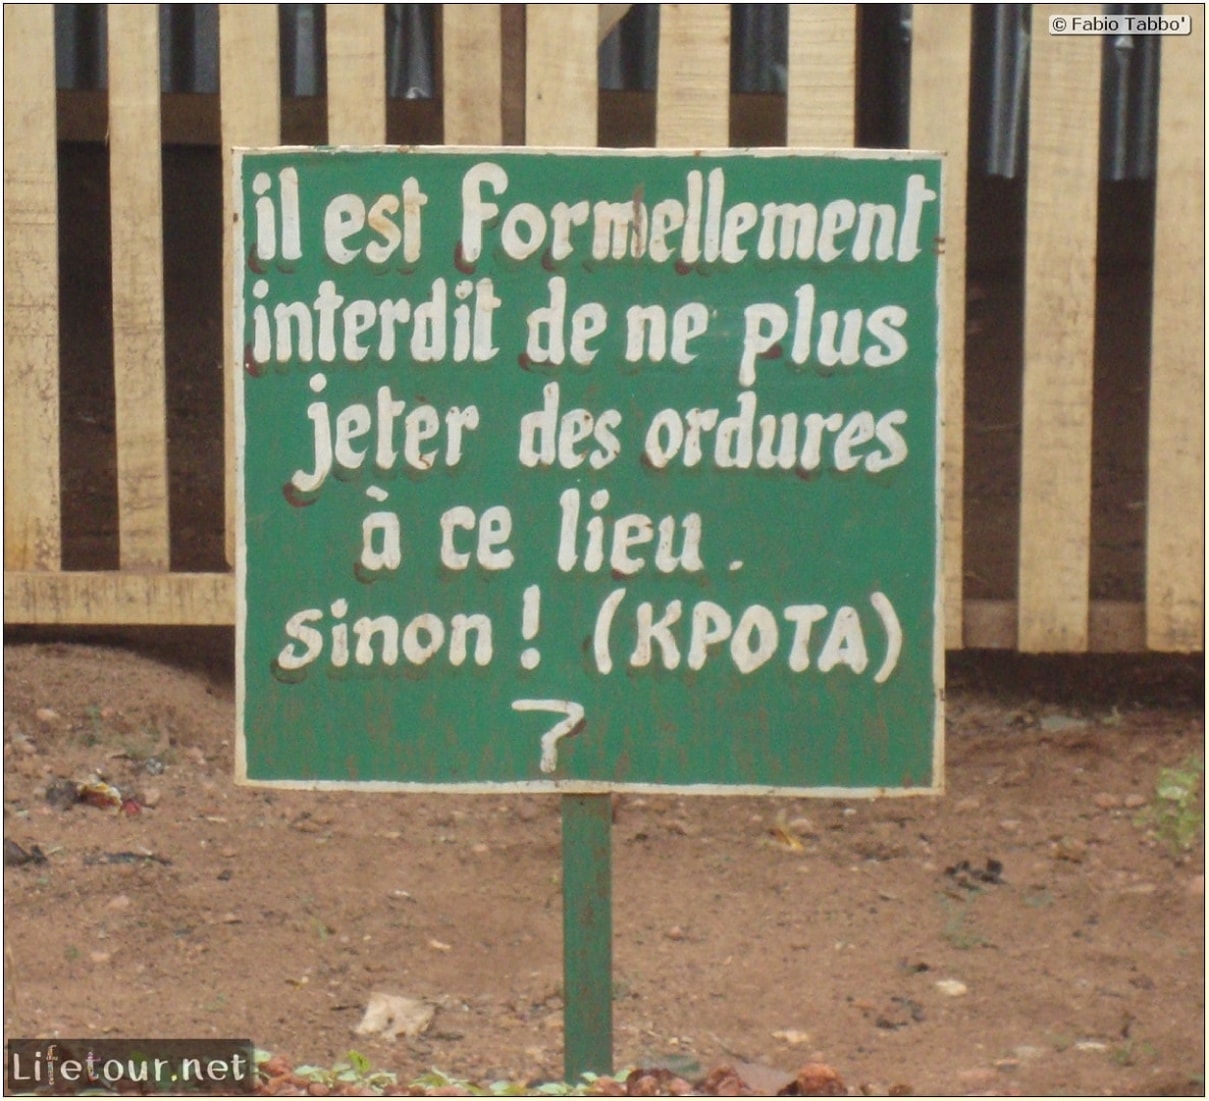 Fabios-LifeTour-Benin-2013-May-Abomey-Abomey-City-1562